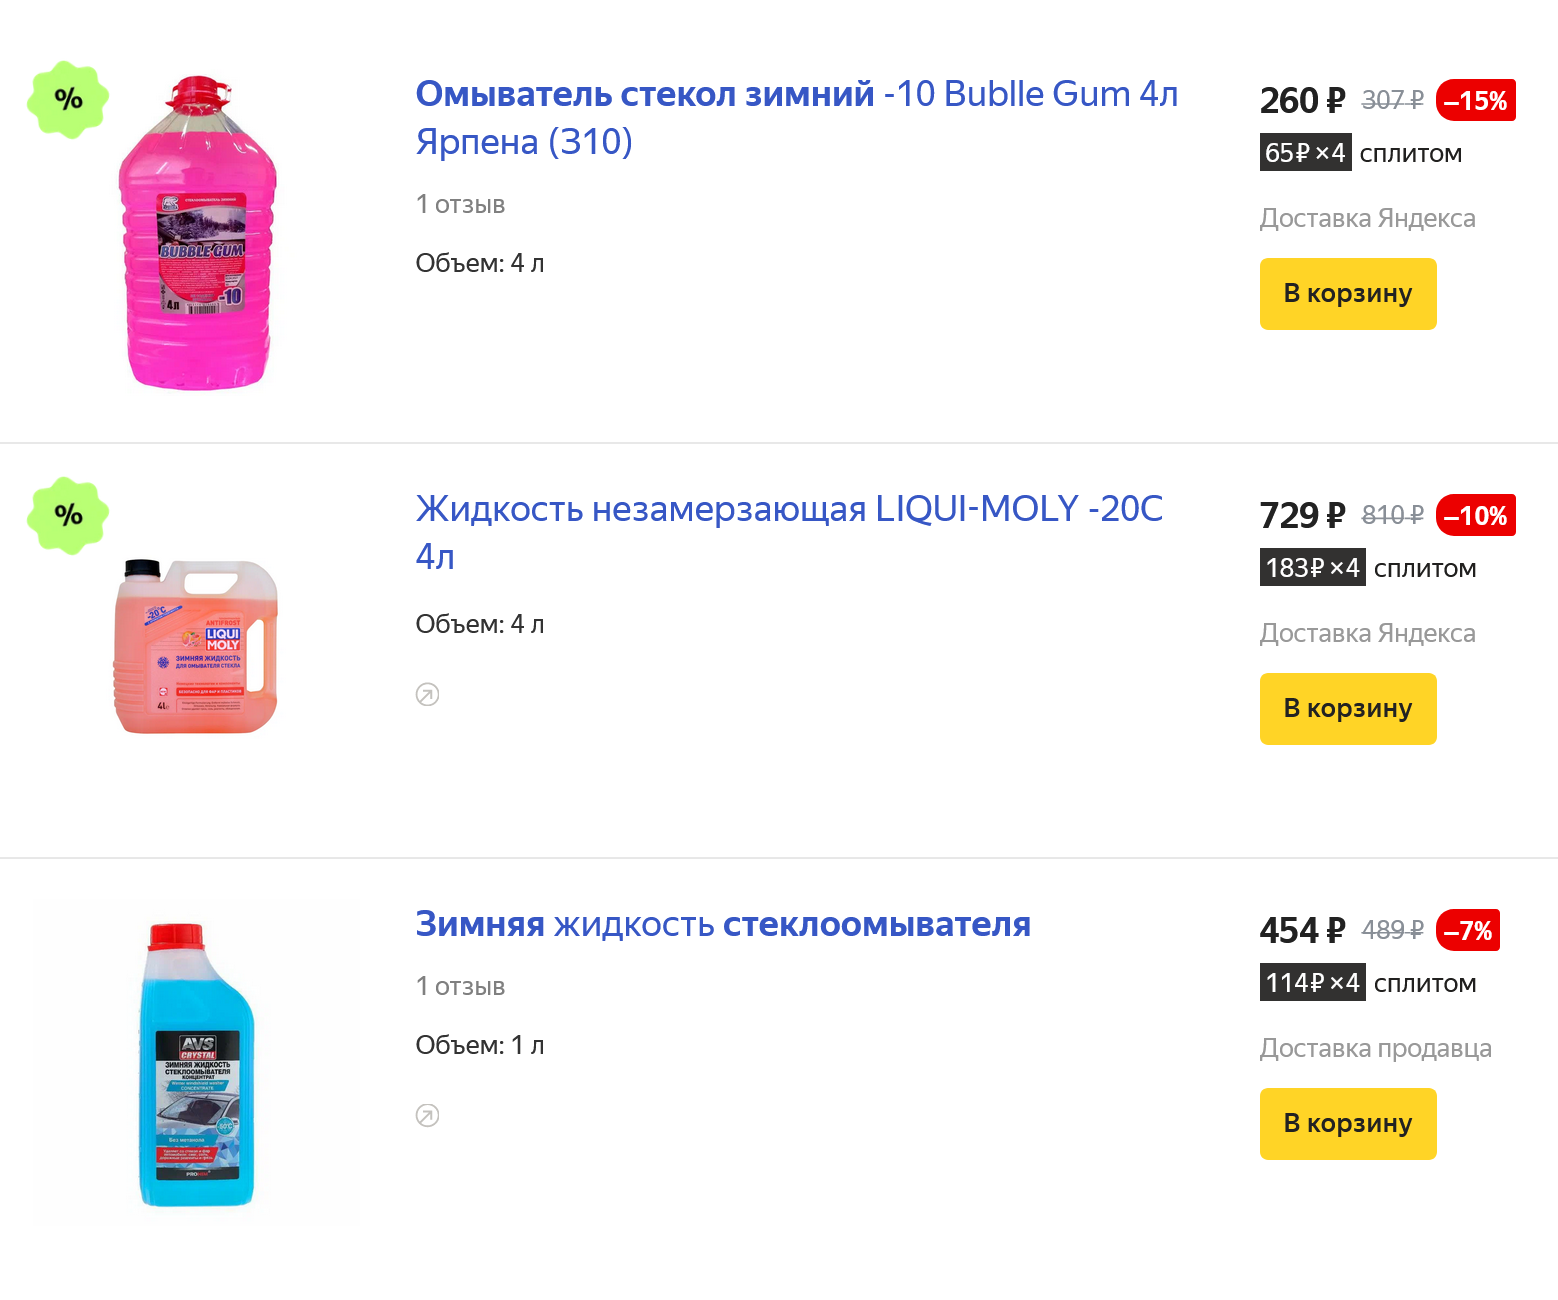 Незамерзающая жидкость для омывателя стоит от 60 ₽ за литр. Источник: market.yandex.ru